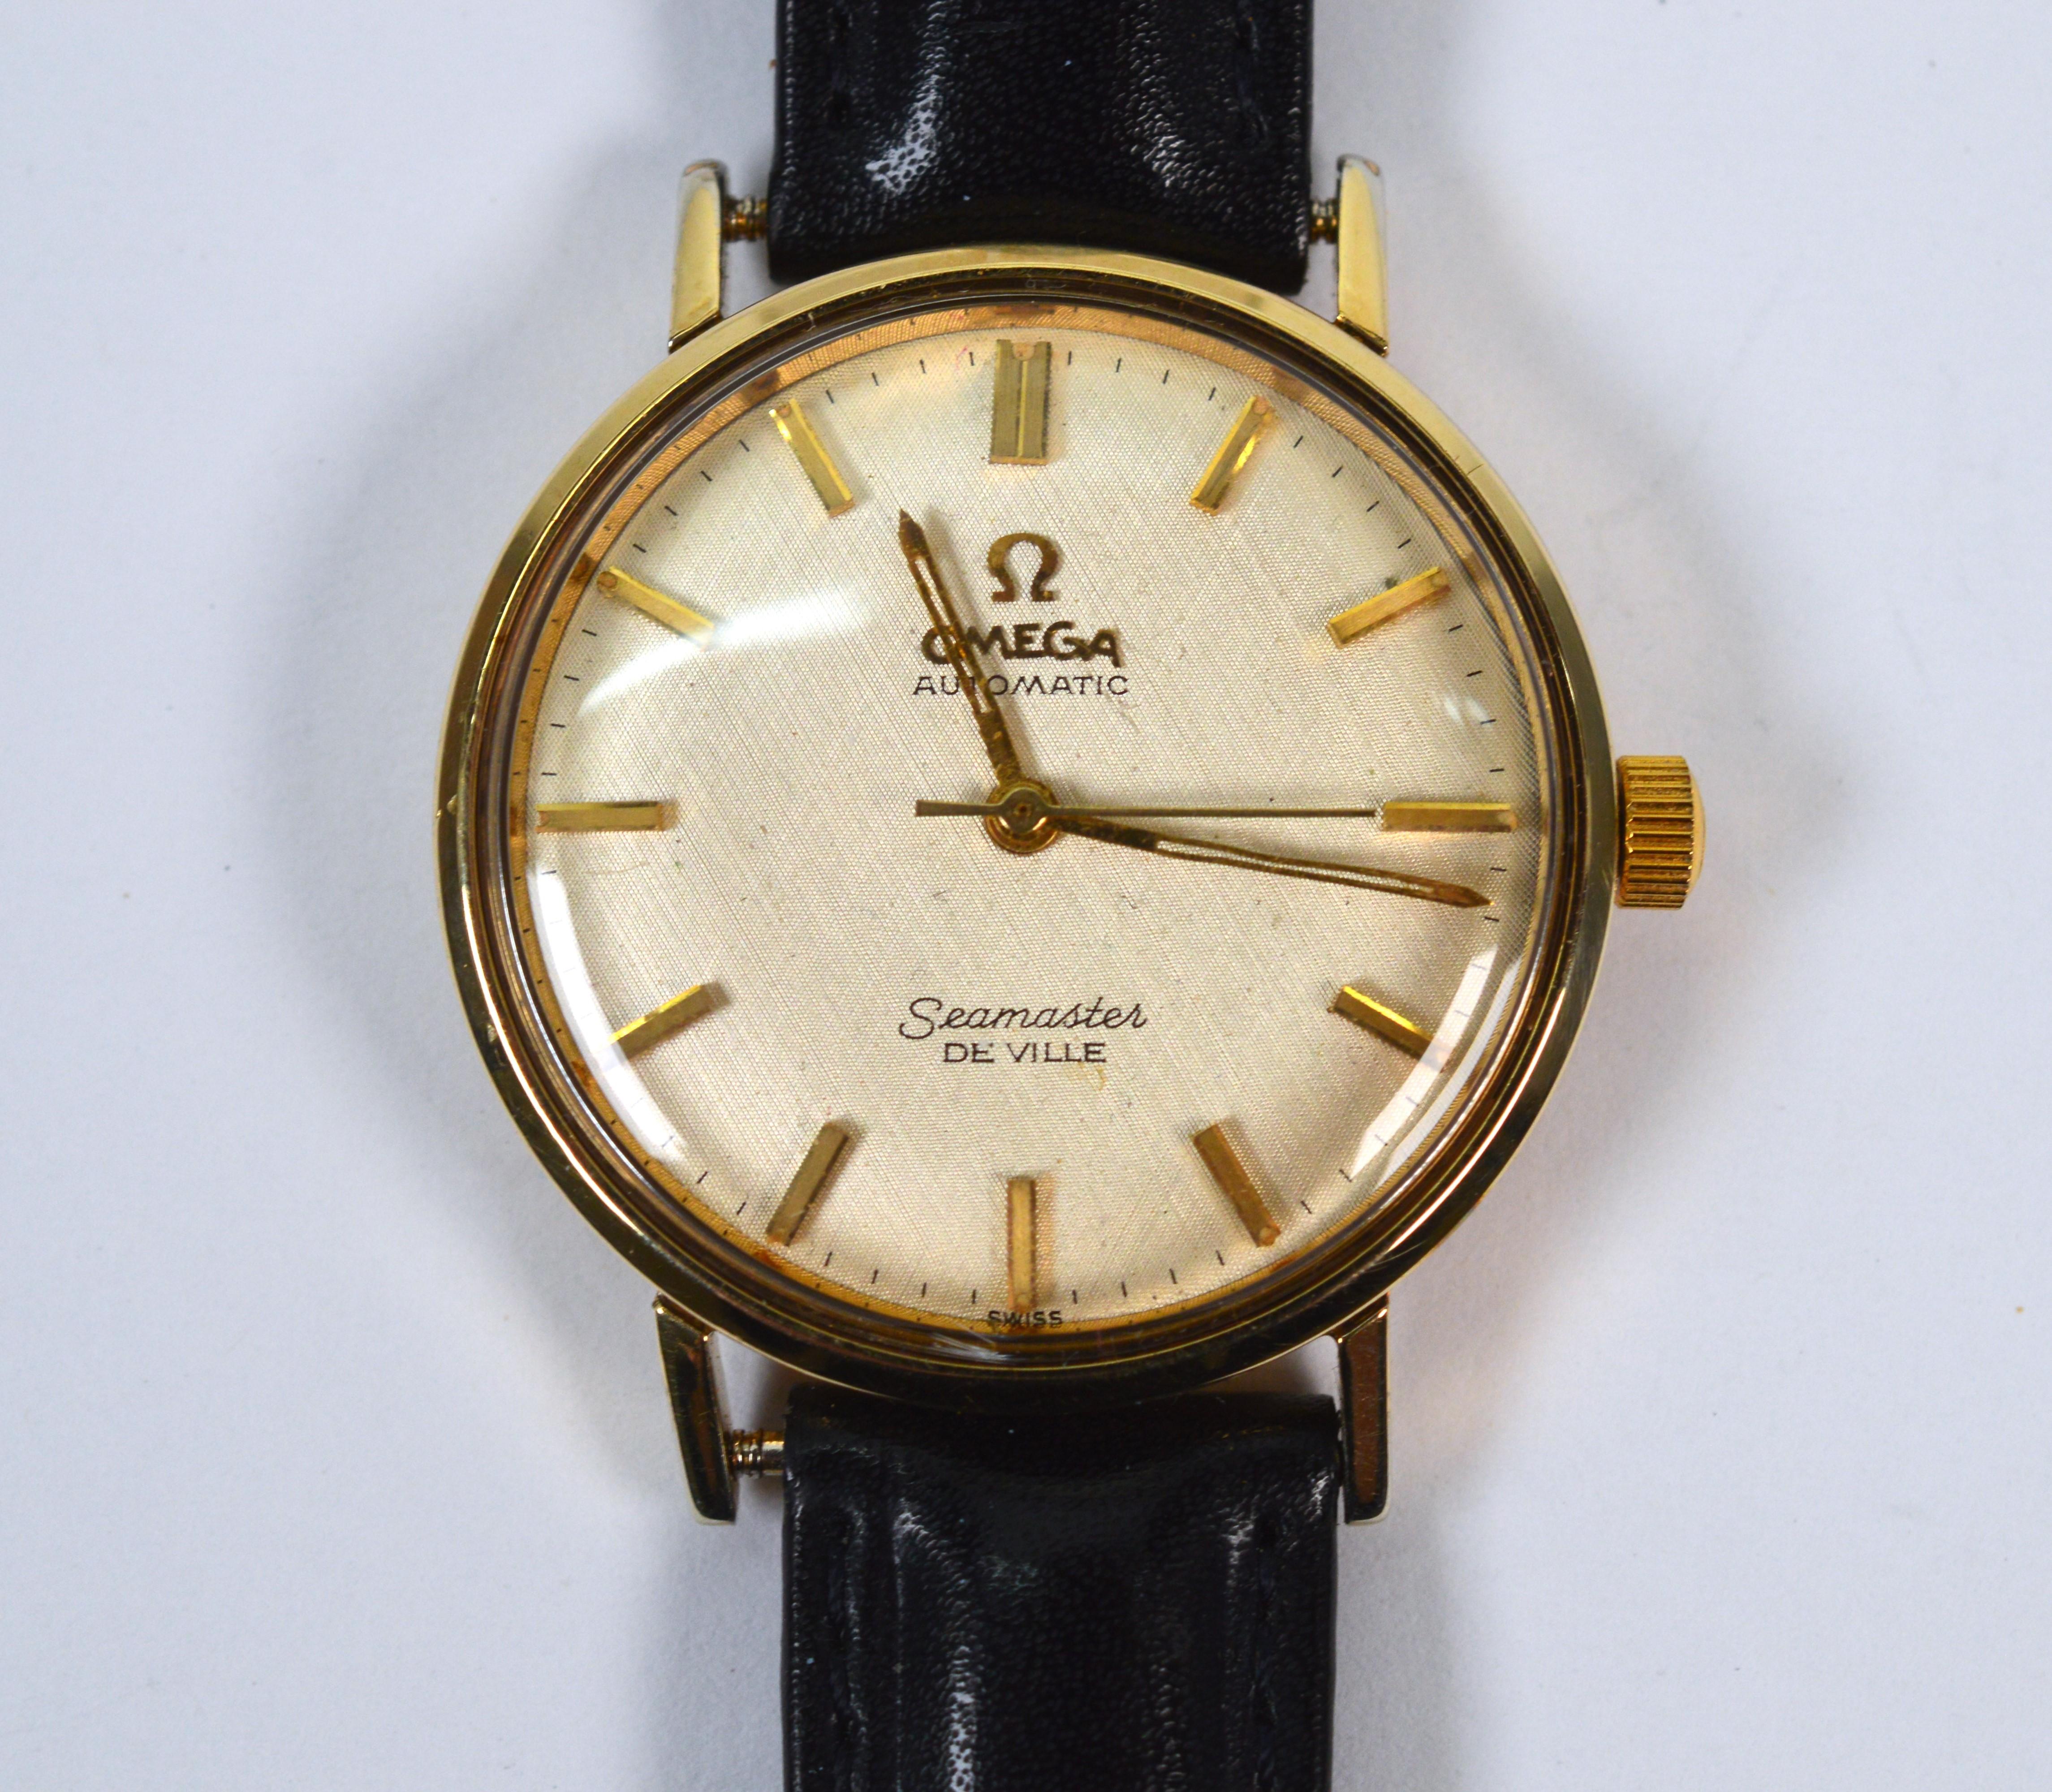 La montre-bracelet Omega Seamaster 563 De Ville Gold Filled pour homme est toujours à la mode. Au sommet de sa popularité dans les années 1950-60, ce garde-temps élégant de 34 mm présente des lignes pures et est léger et confortable à porter. Le